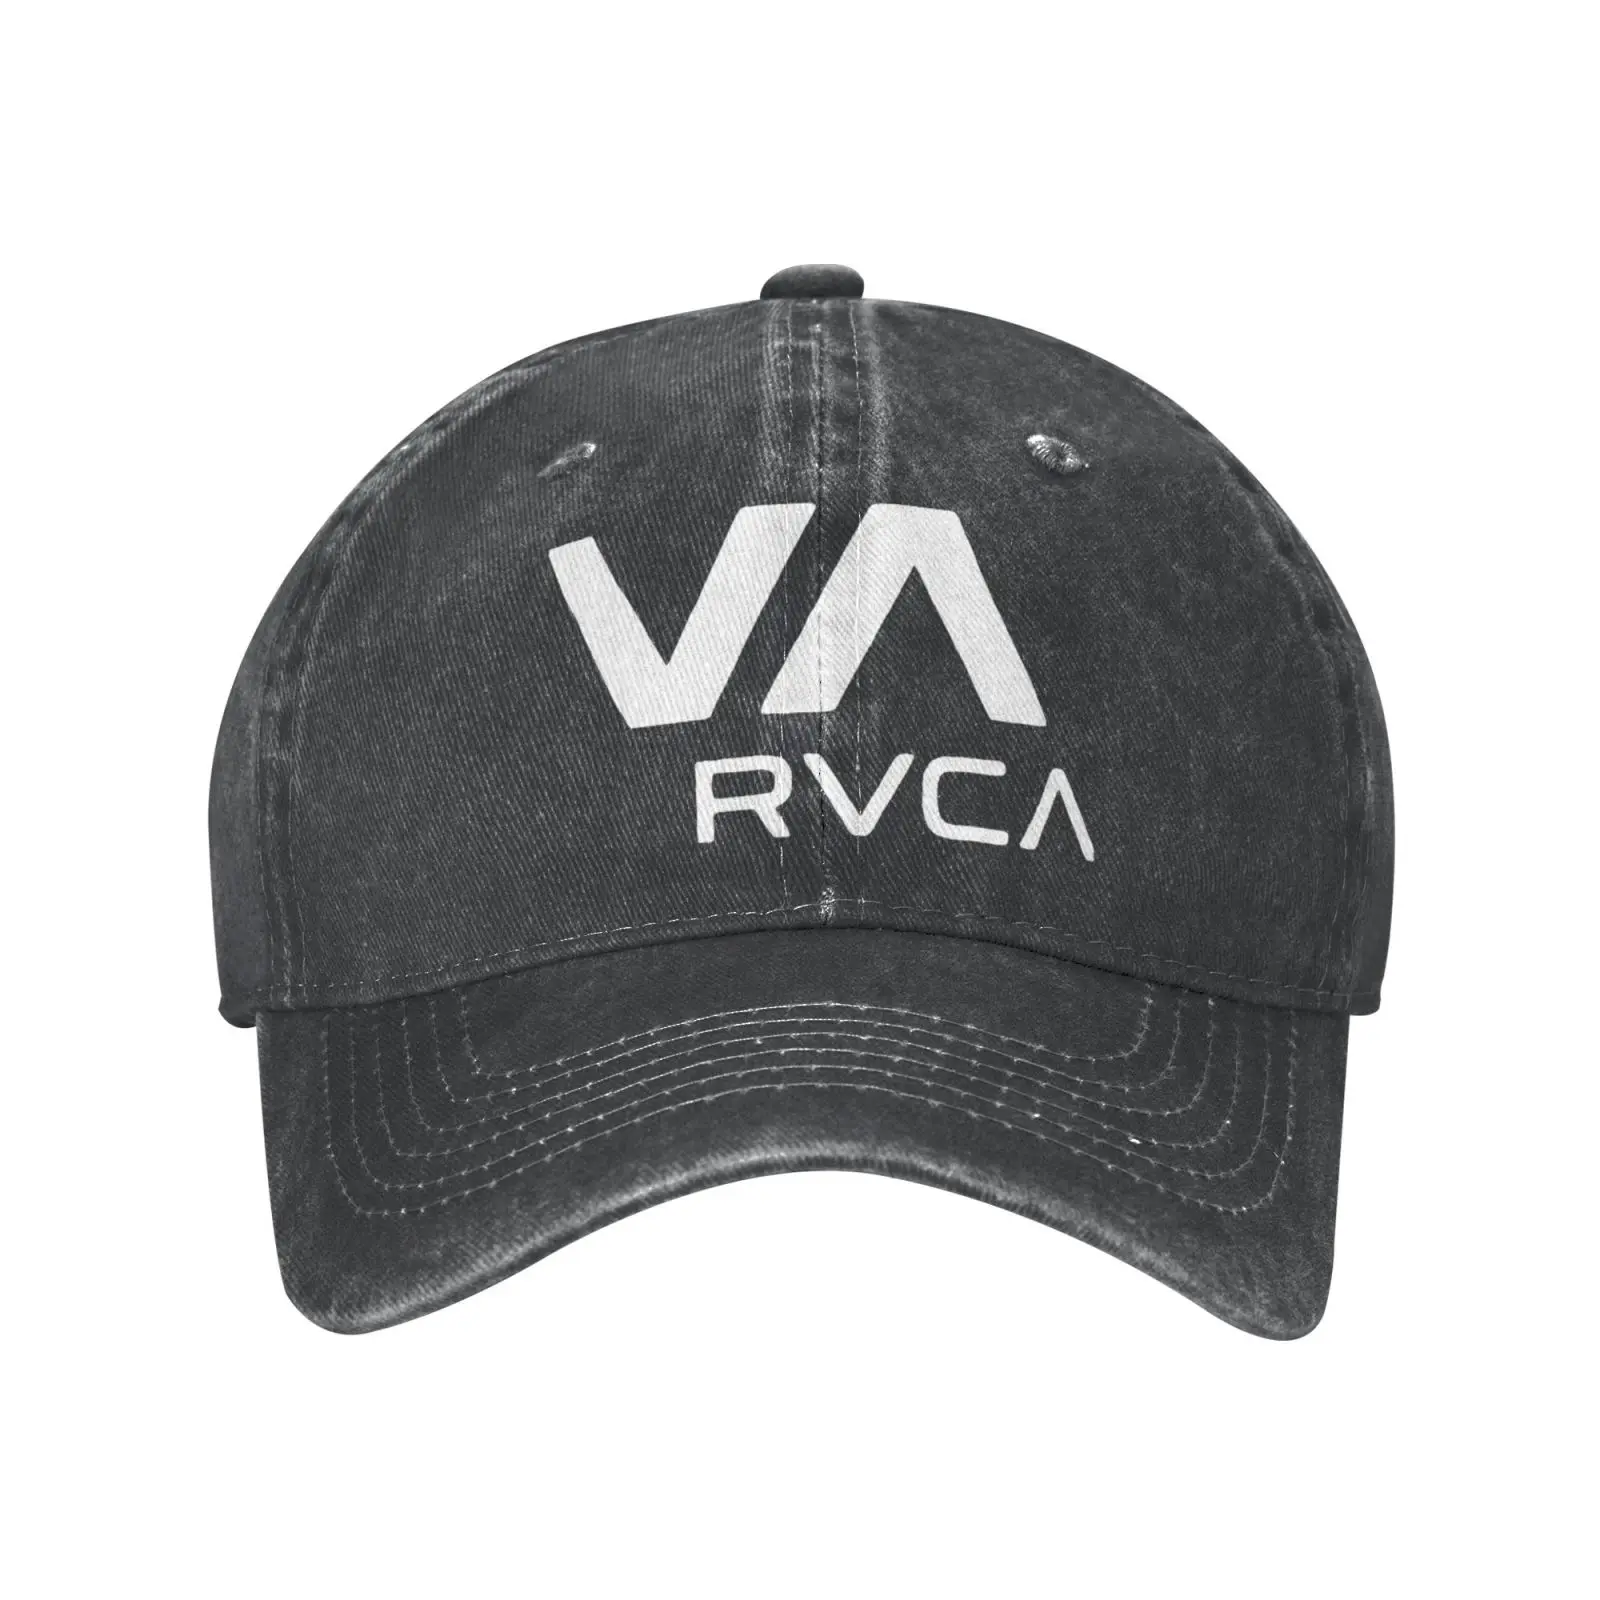 

Бейсболка Rvca Limited для мужчин, головной убор, женские мужские головные уборы, Мужская кепка, вязаная Балаклава, женская и мужская кепка, модна...